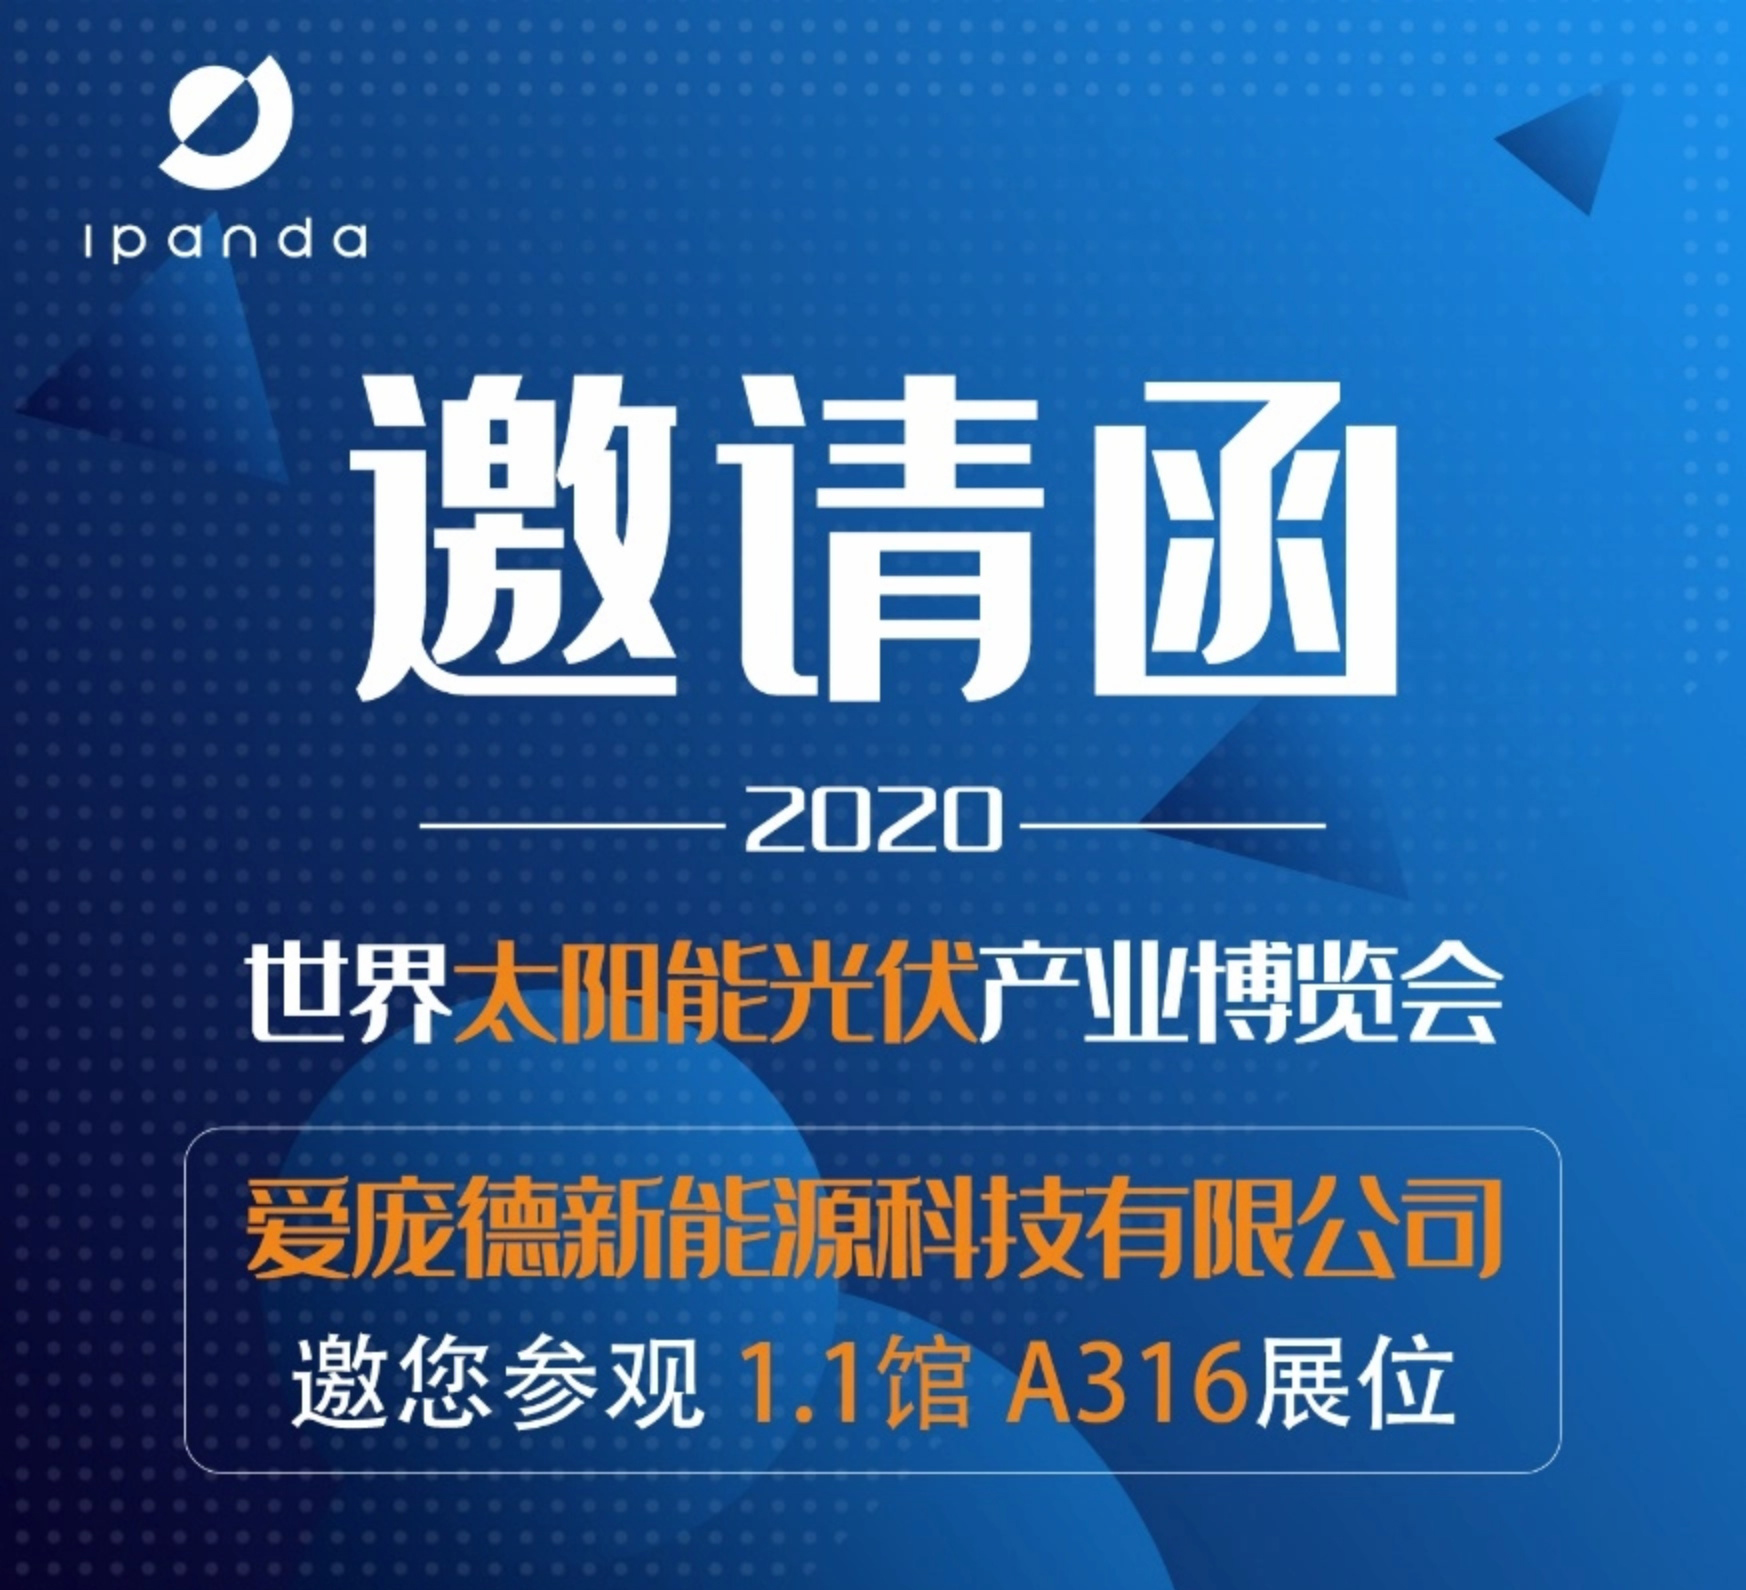 Ipandee und Sie werden sich 2020 in Guangzhou Internat ional Solar PV Exhibition treffen